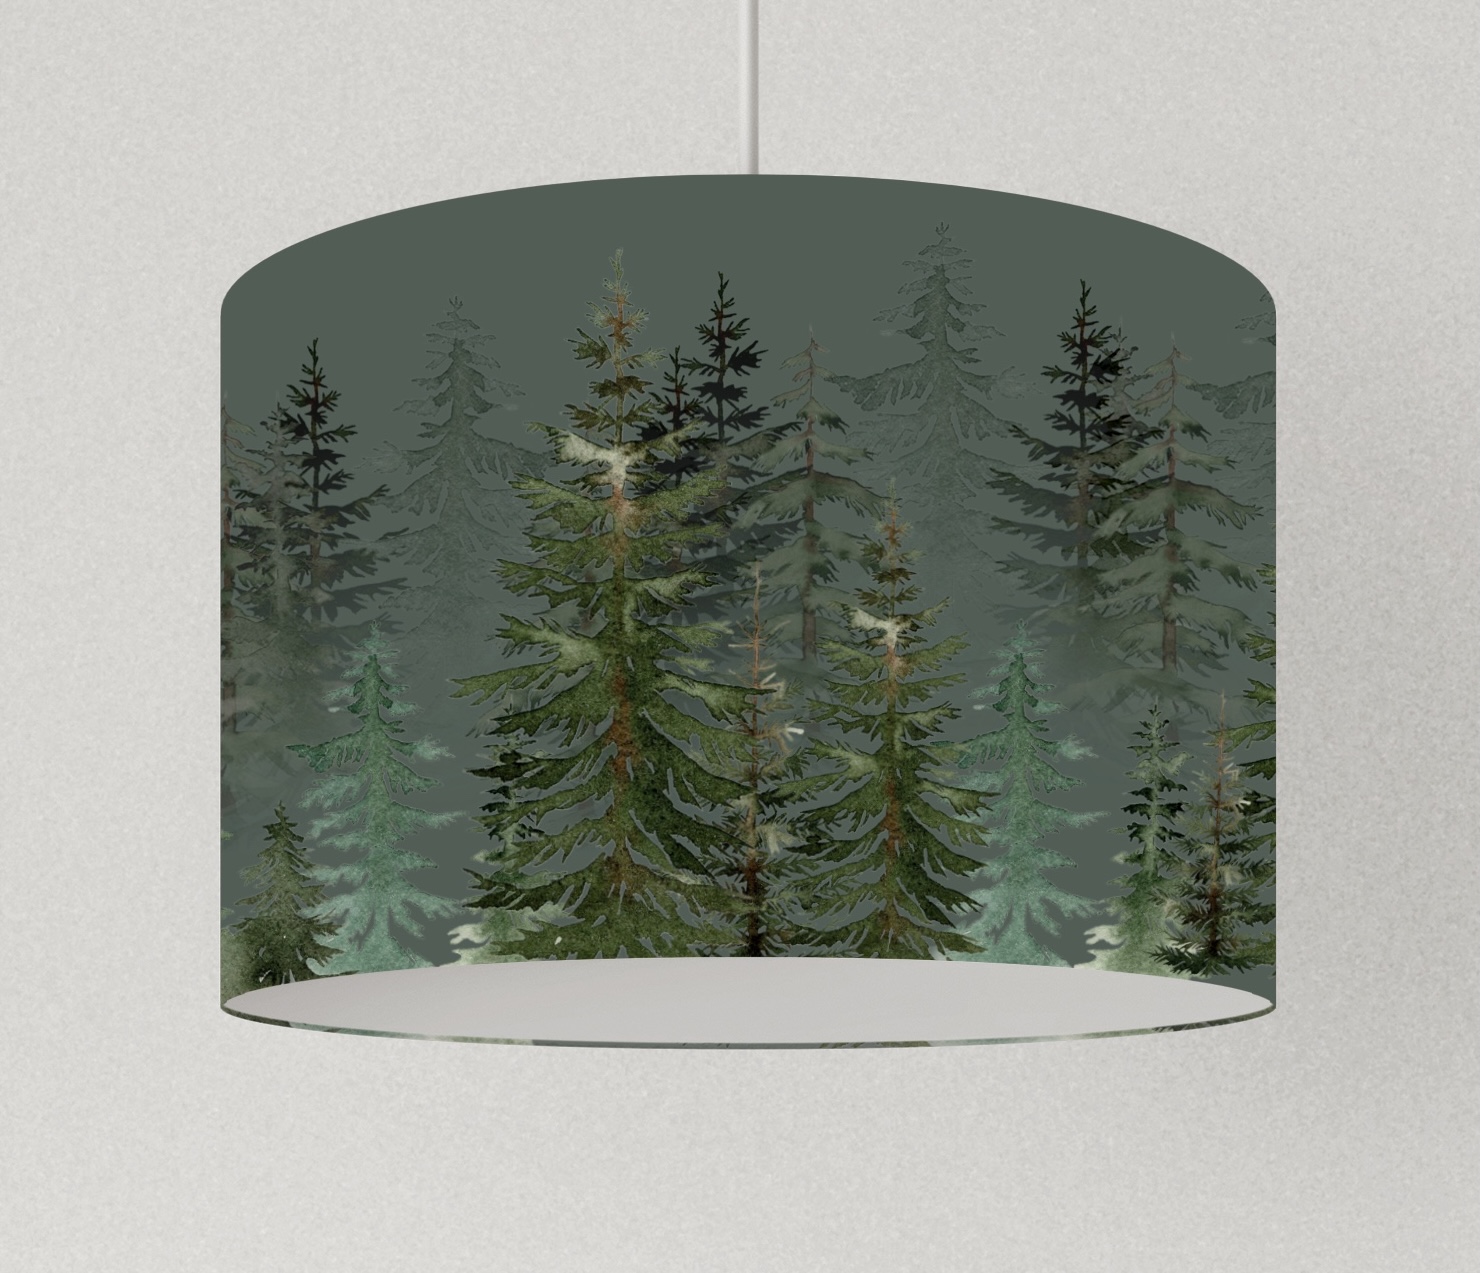 Lampe Wohnzimmer Wald , Lampenschirm grün, Hängelampe Küche, Tischlampe grün Bäume 5